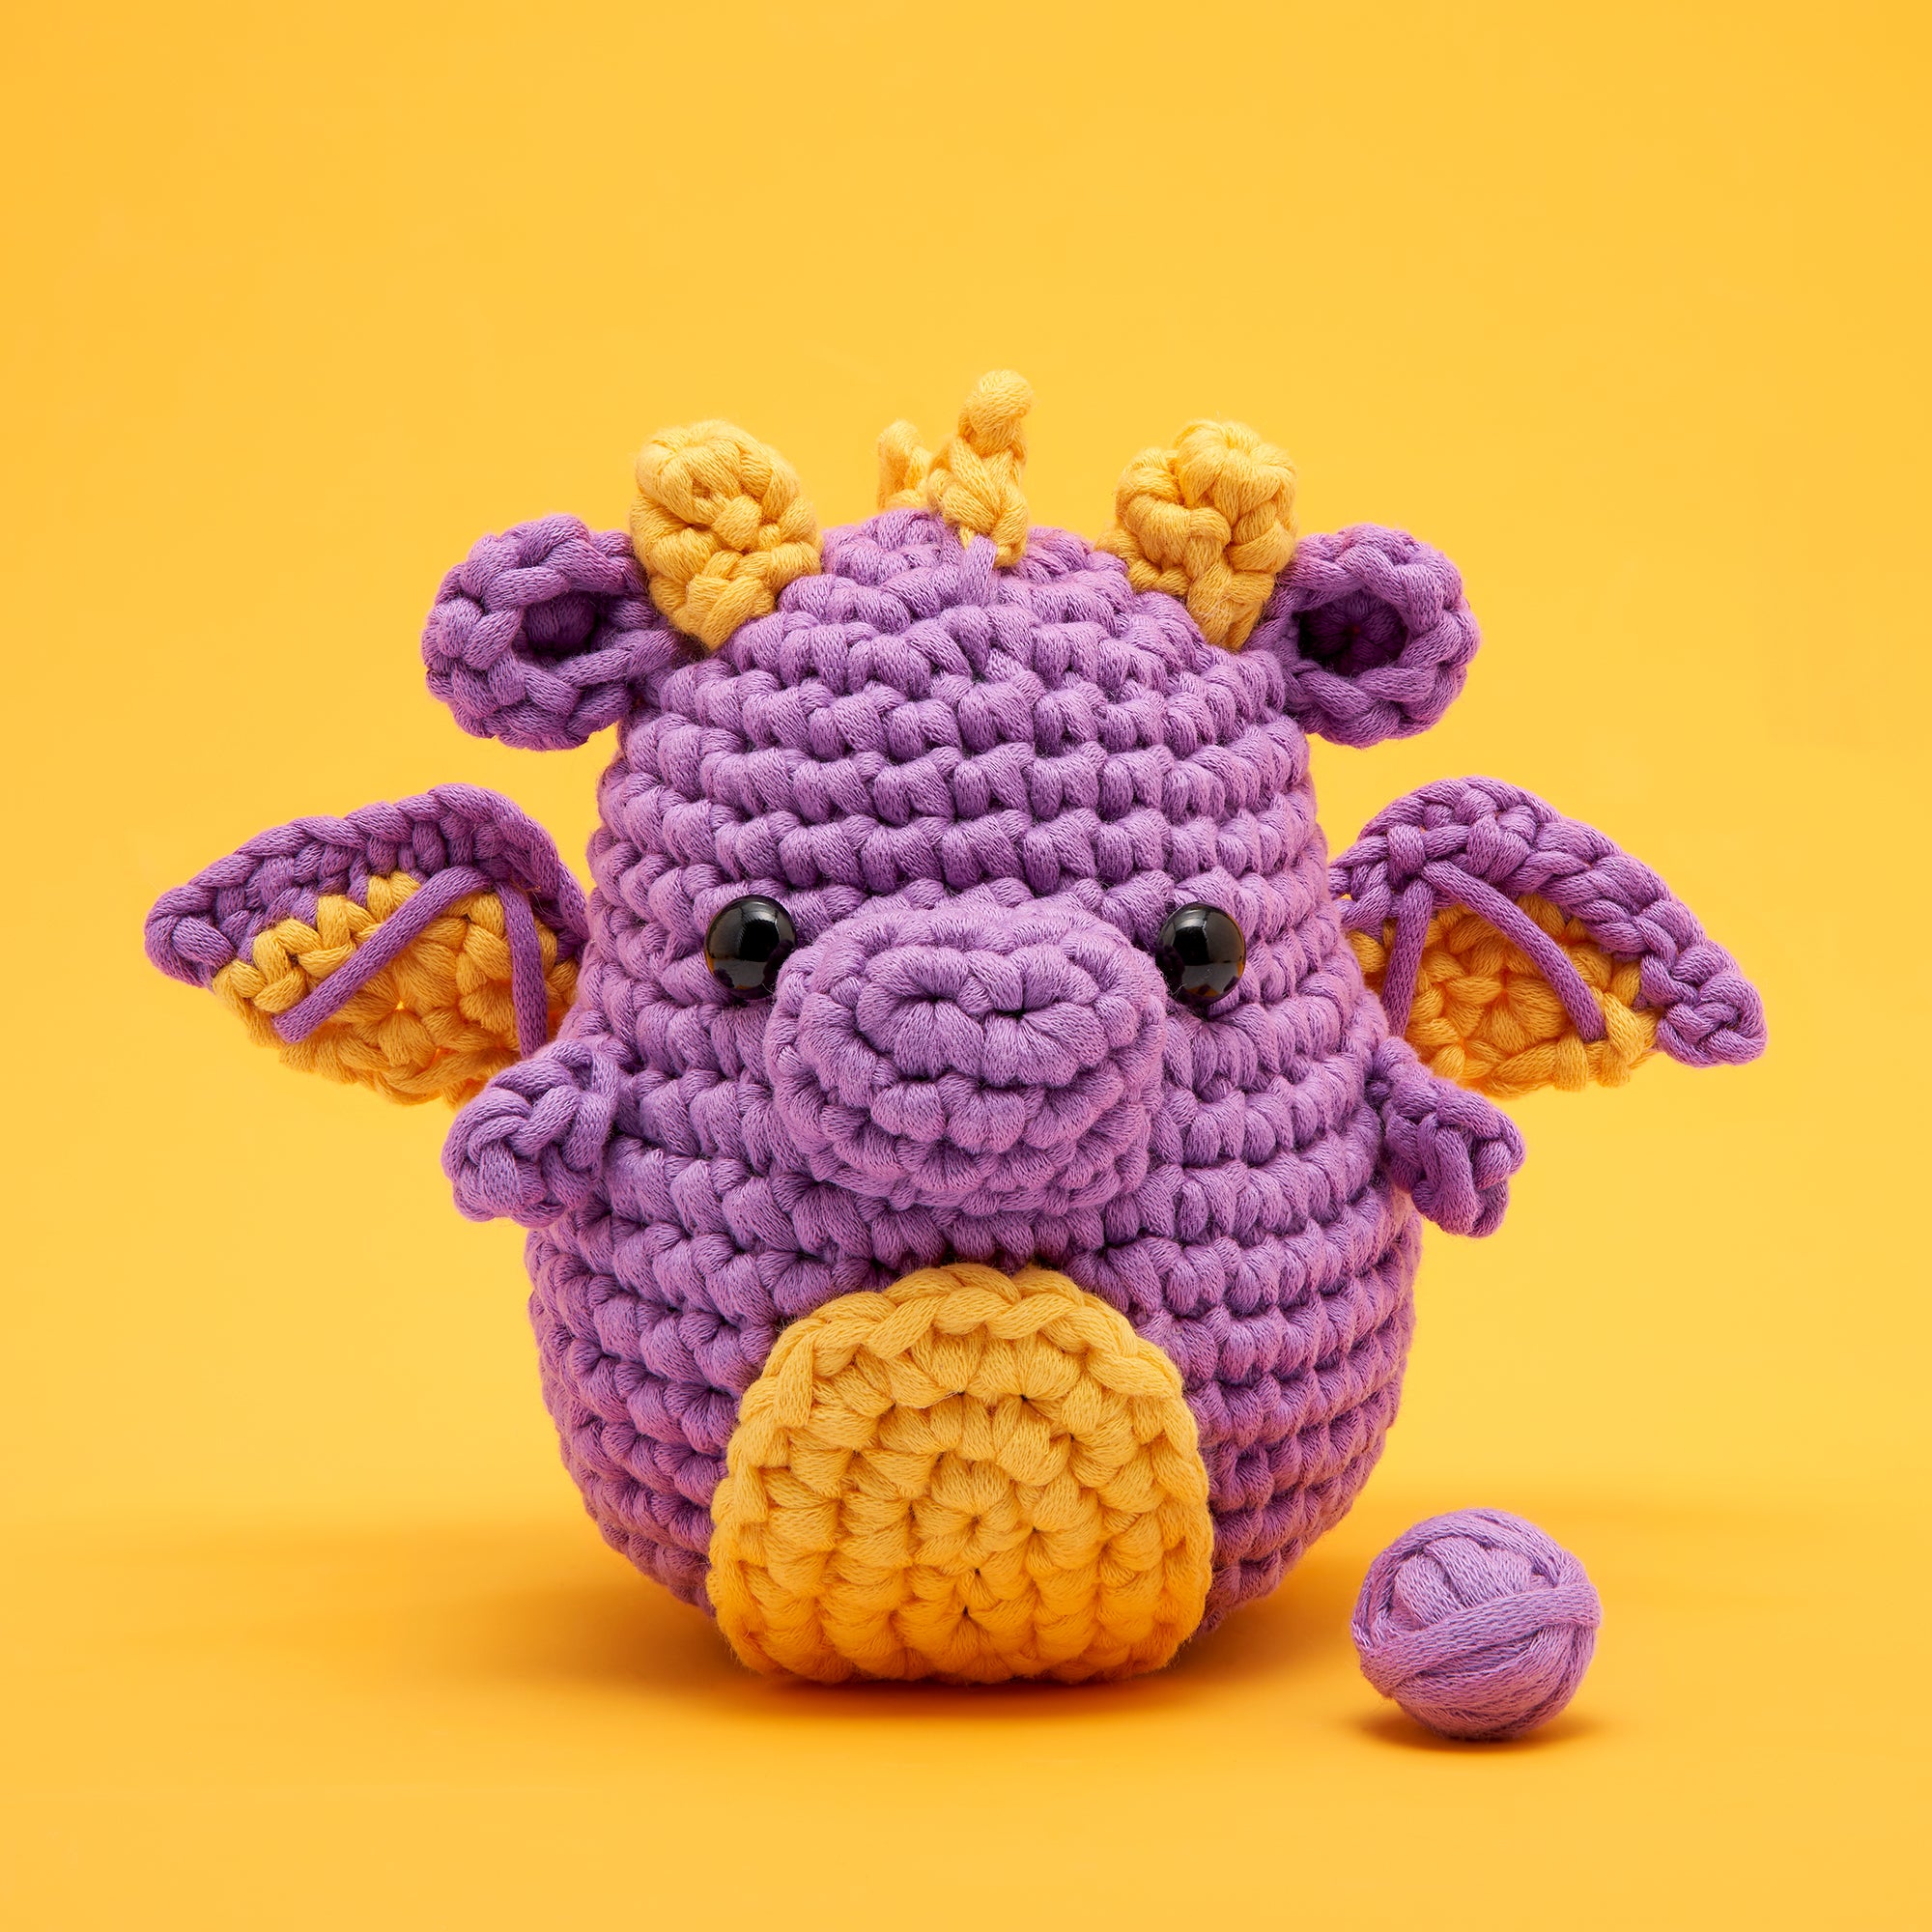 Build Your Own Crochet Kit